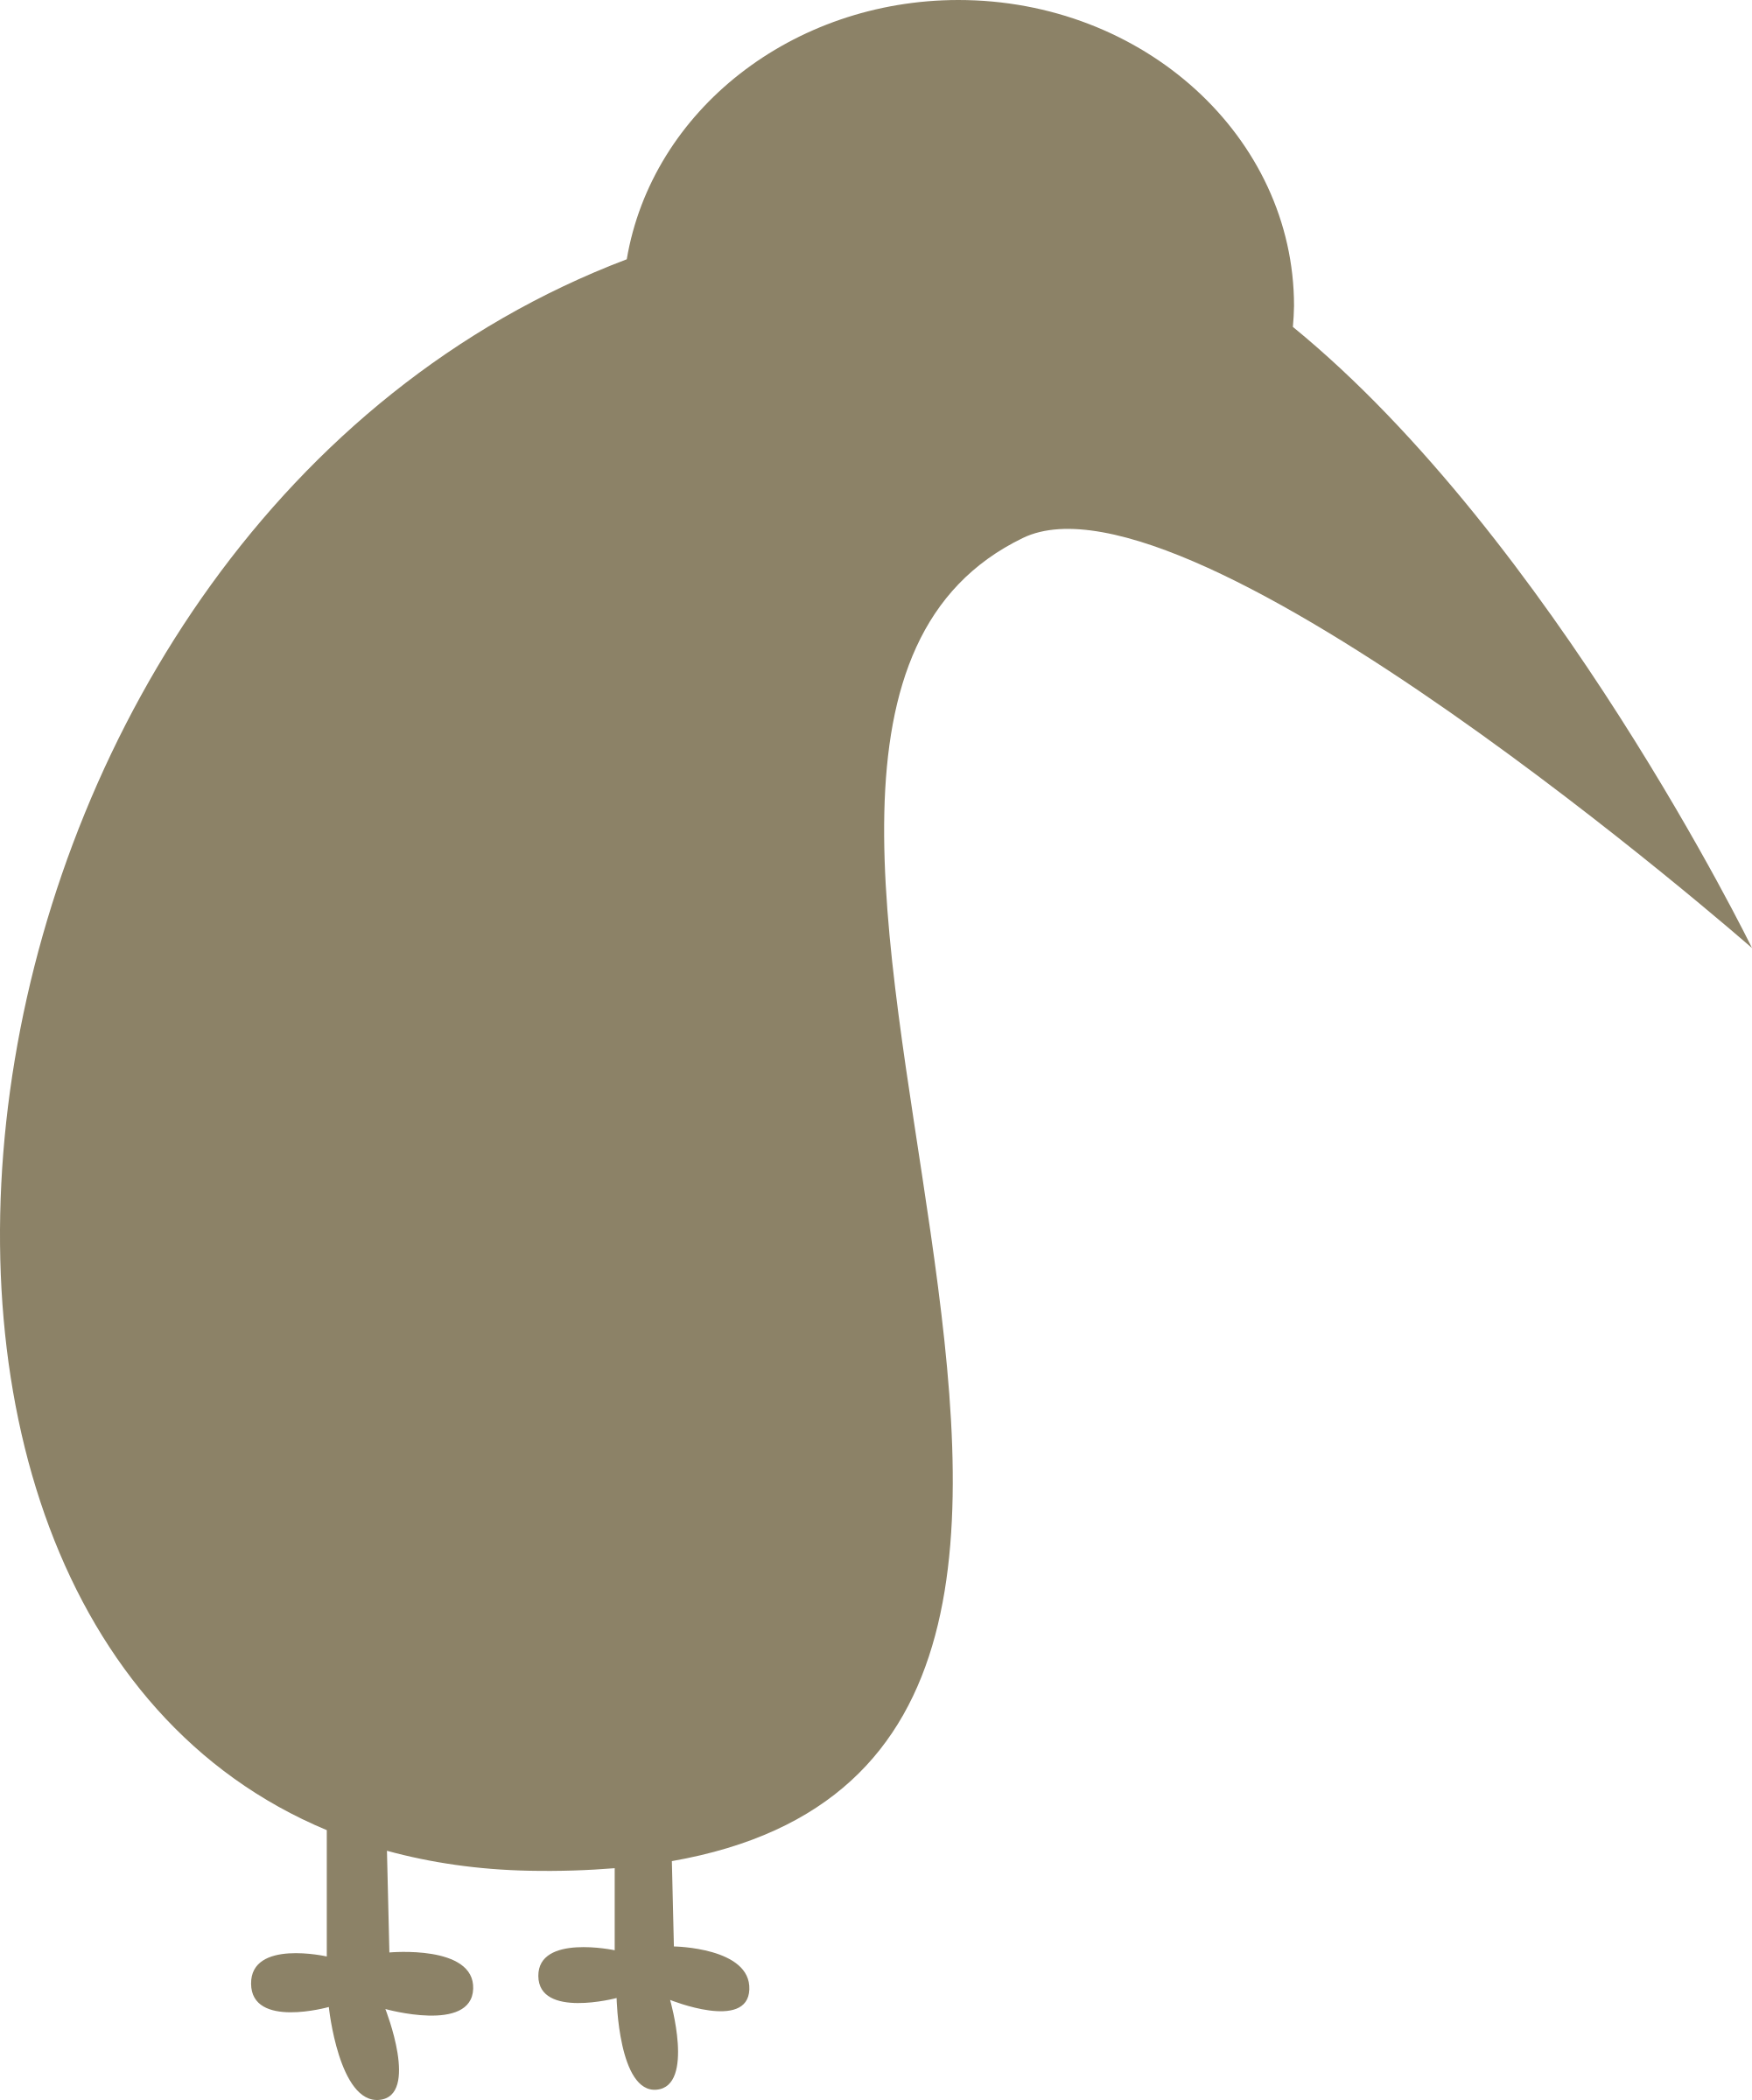 Kiwi flightless bird